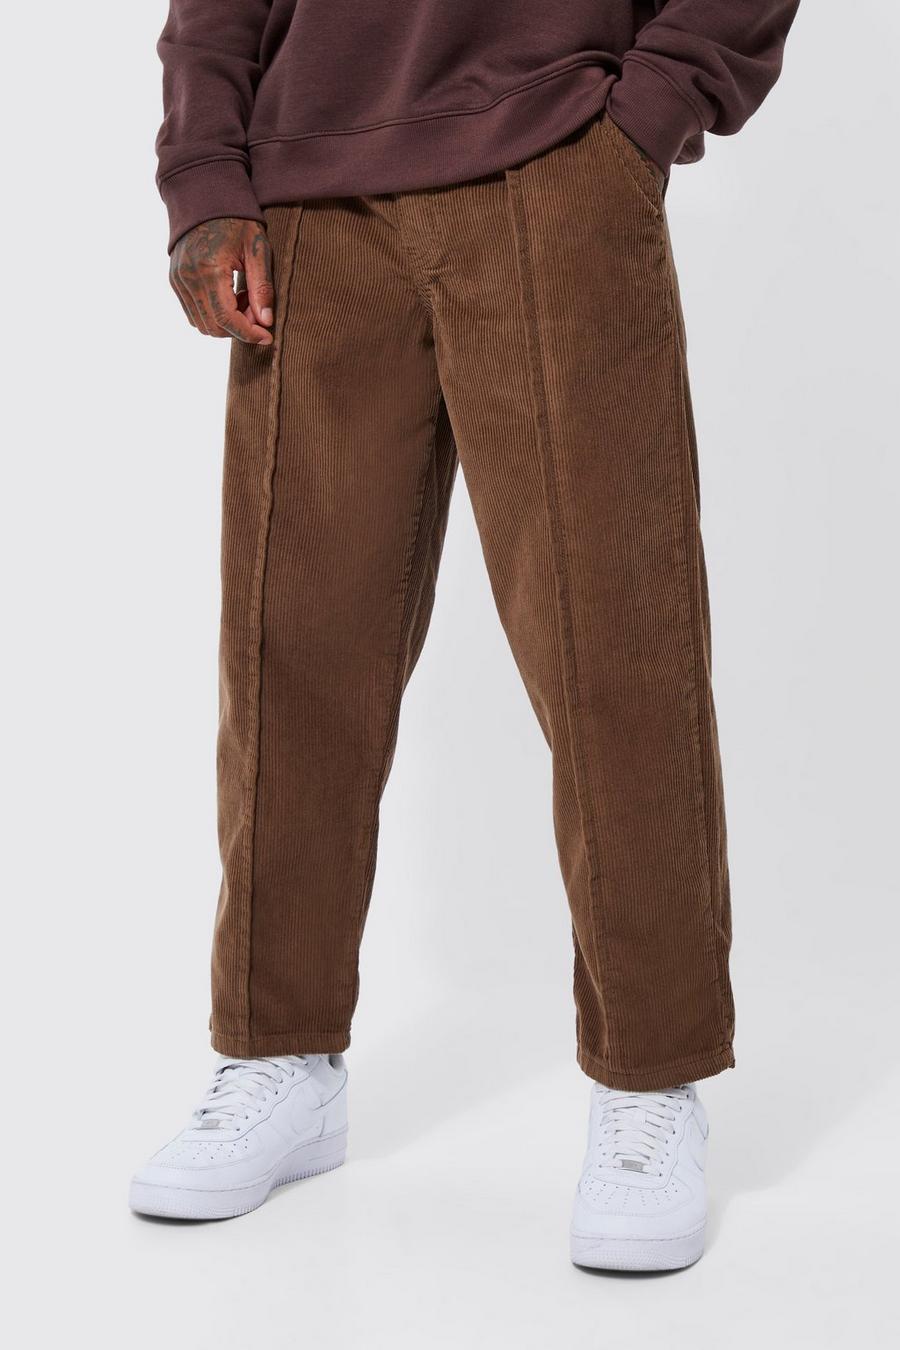 Pantalon de skate en velours côtelé, Chocolate brown